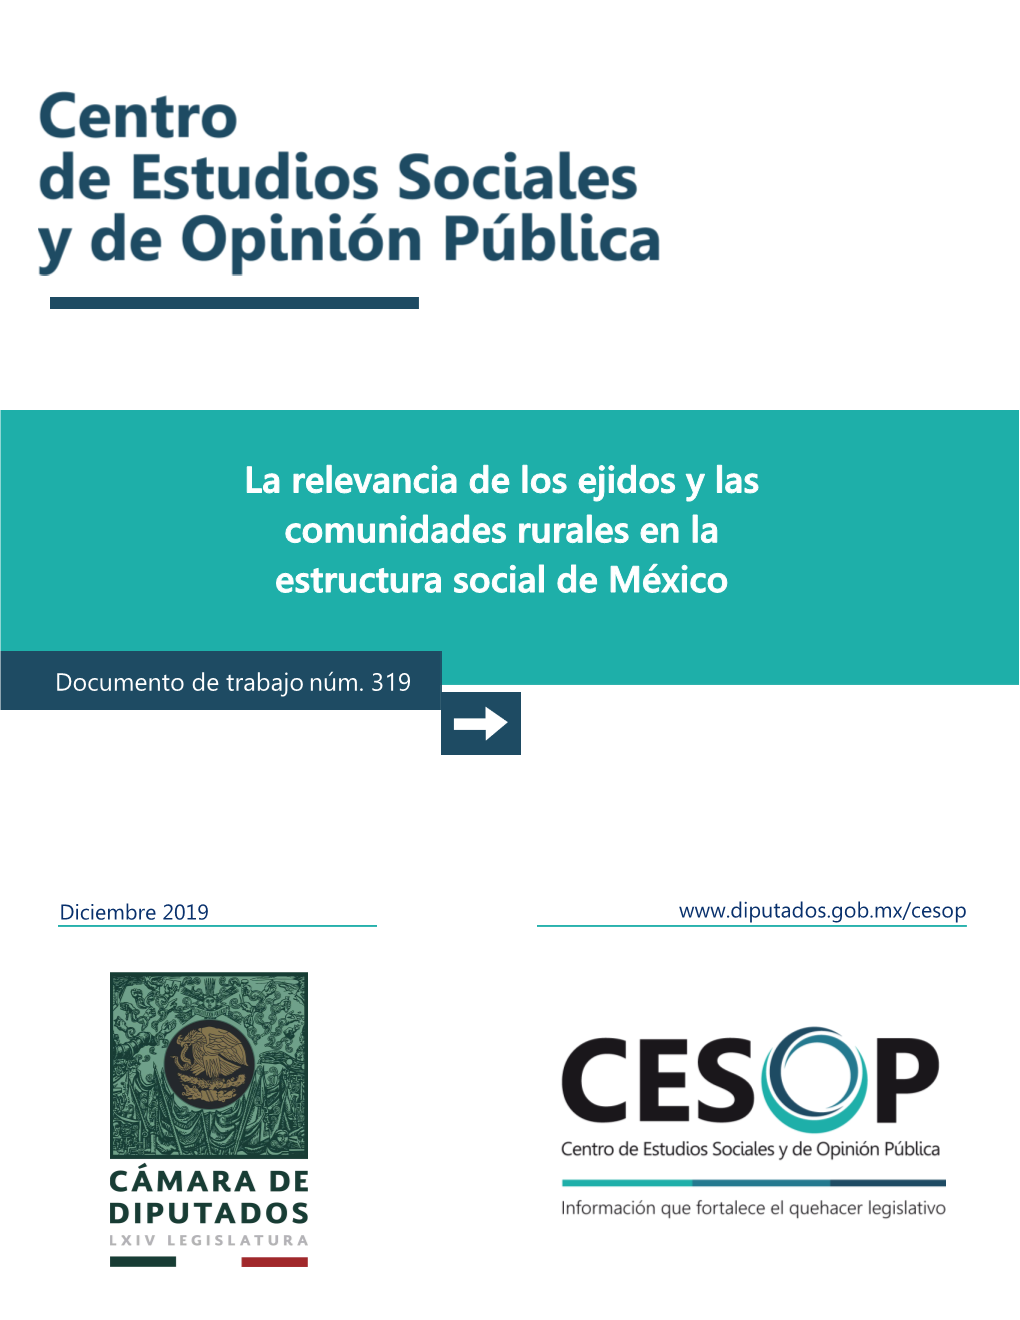 La Relevancia De Los Ejidos Y Las Comunidades Rurales En La Estructura Social De México